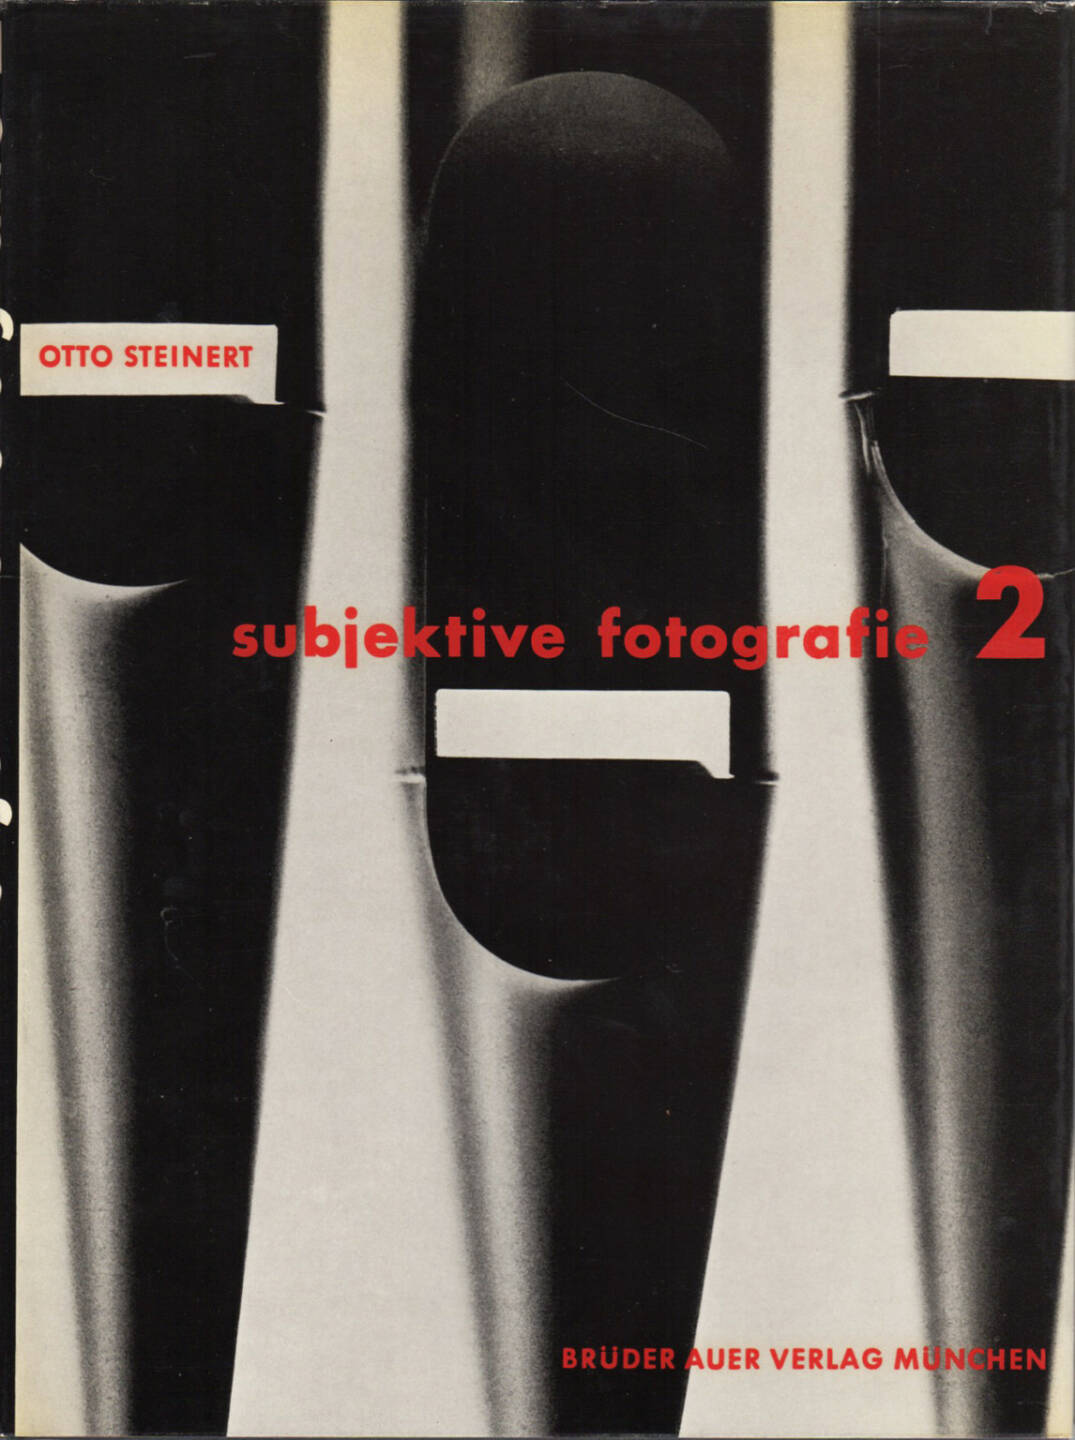 Otto Steinert - Subjektive Fotografie 2 - Ein Bildband moderner Fotografie, Brüder Auer Verlag 1955, Cover - http://josefchladek.com/book/otto_steinert_-_subjektive_fotografie_2_-_ein_bildband_moderner_fotografie